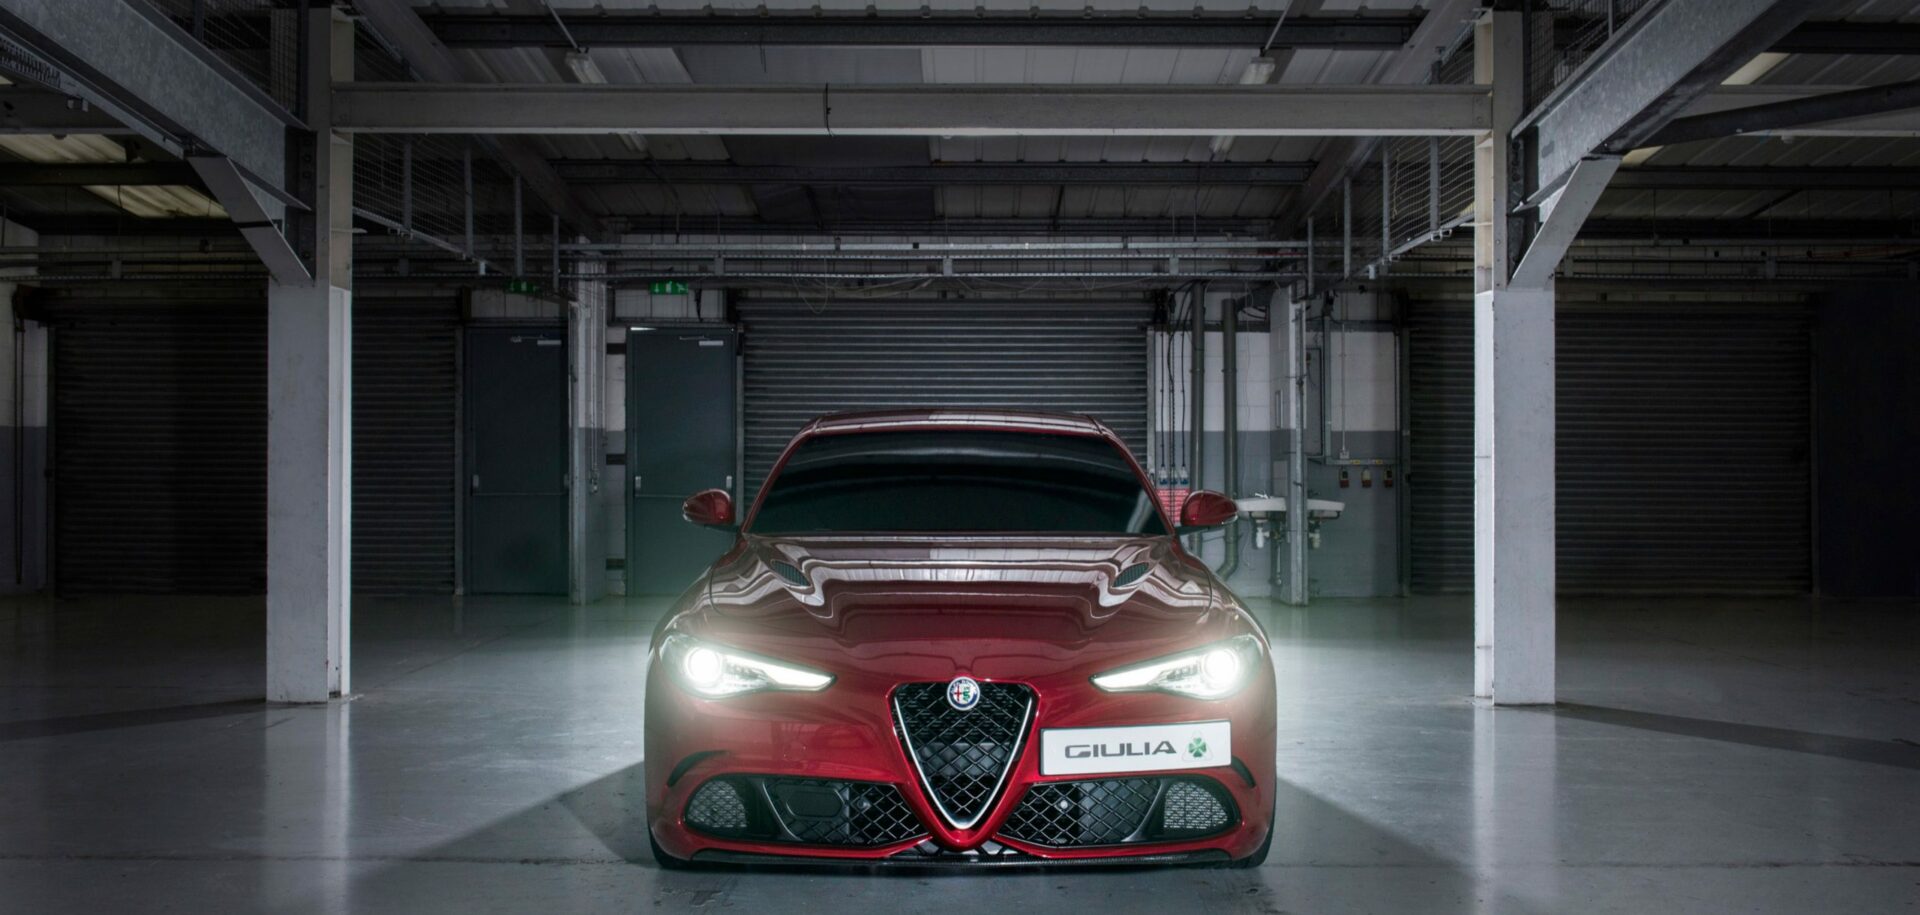 倘若堂吉诃德的坐骑是 Alfa Romeo